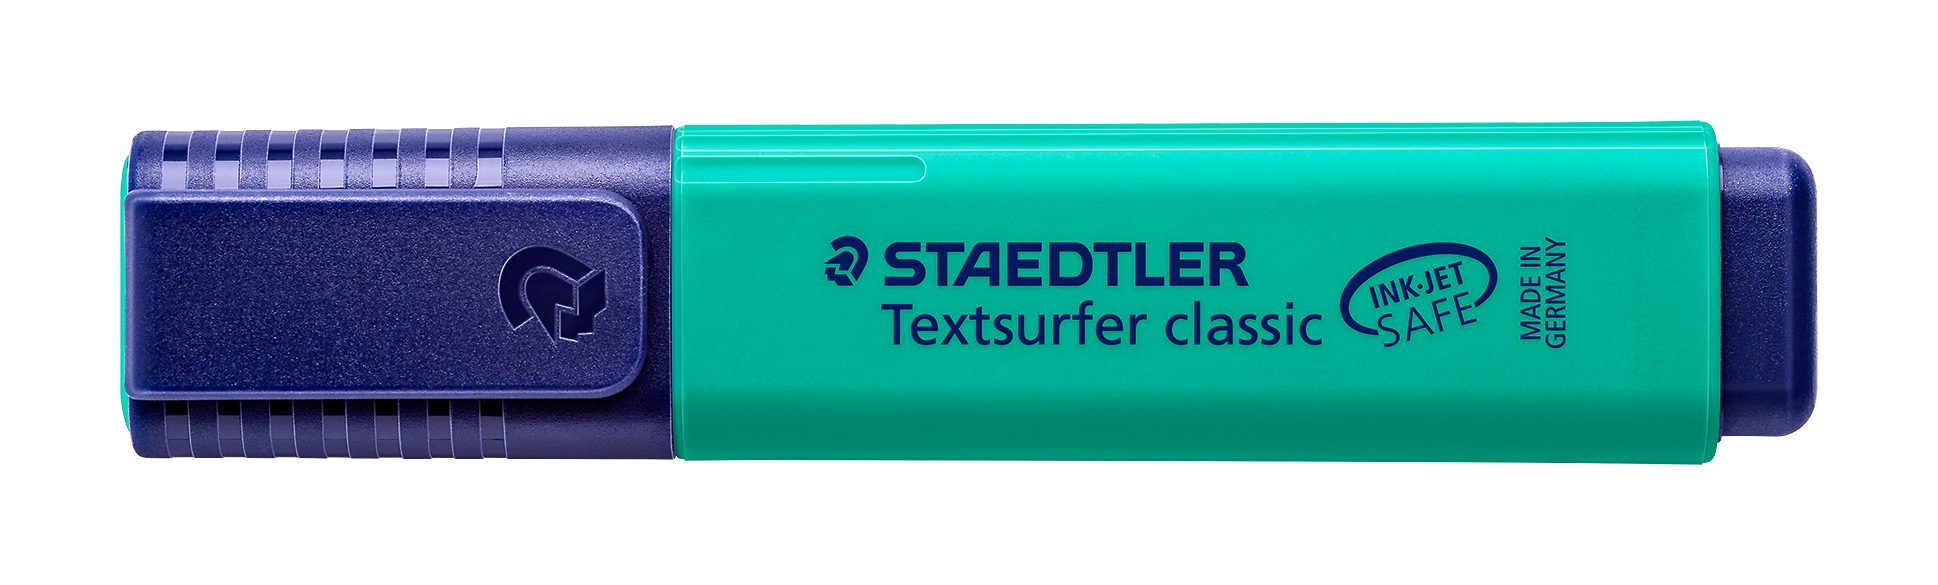 Staedtler SAFE classic Leuchtstift, 364-35 STAEDTLER türkis INK Textsurfer JET Marker